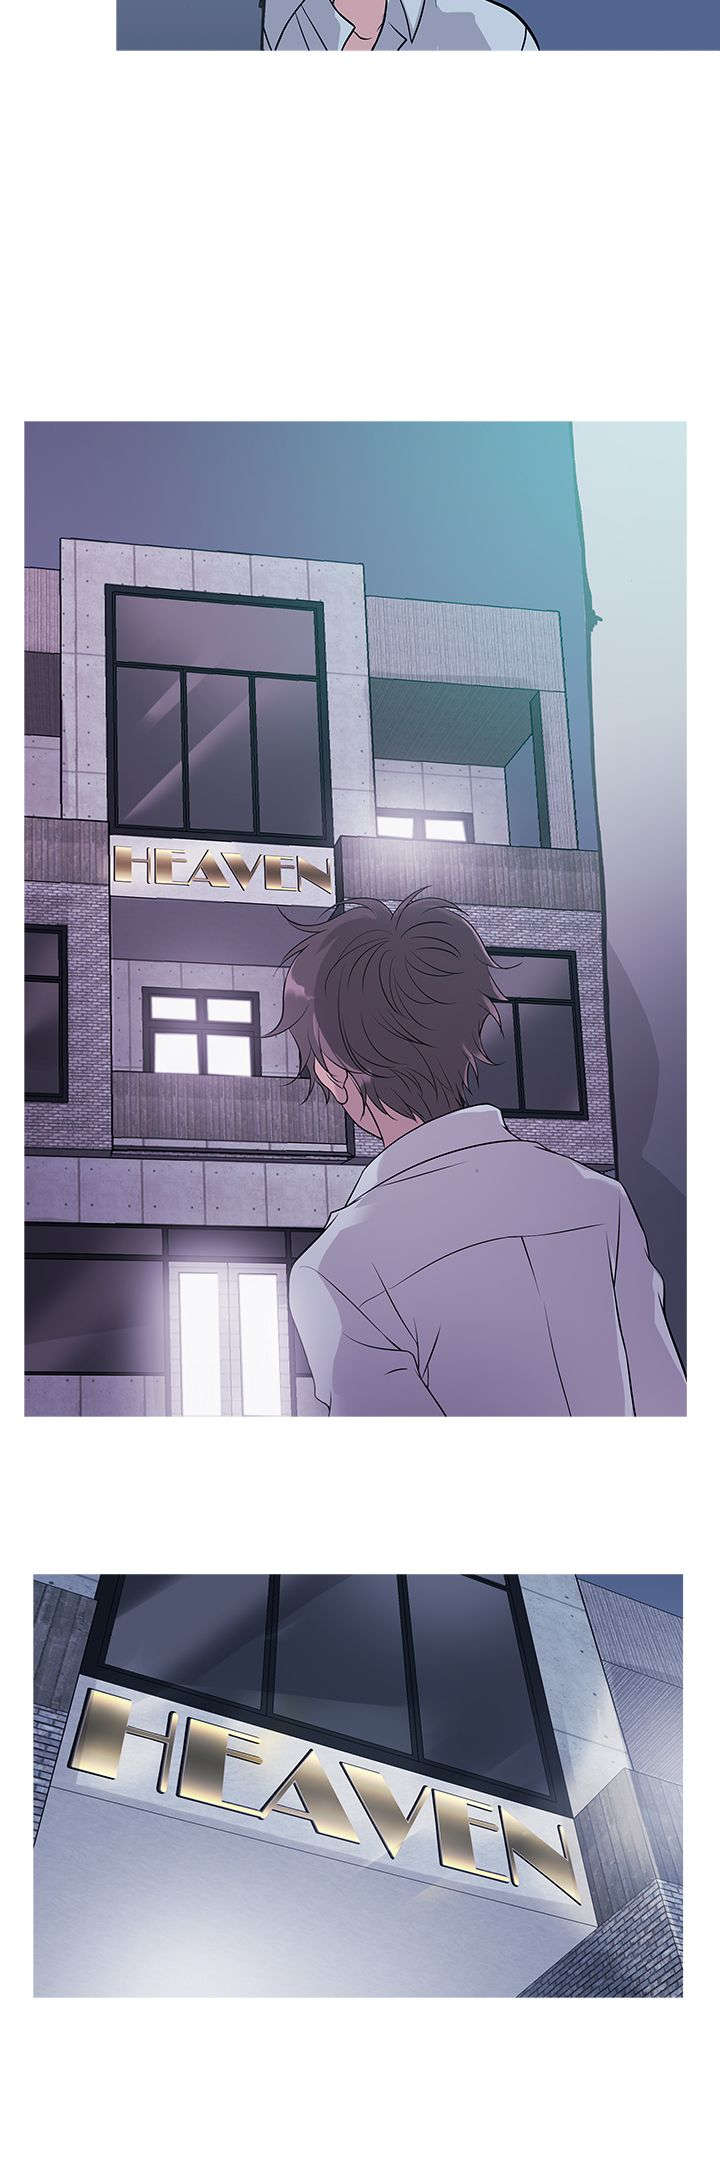 第11章：heaven13